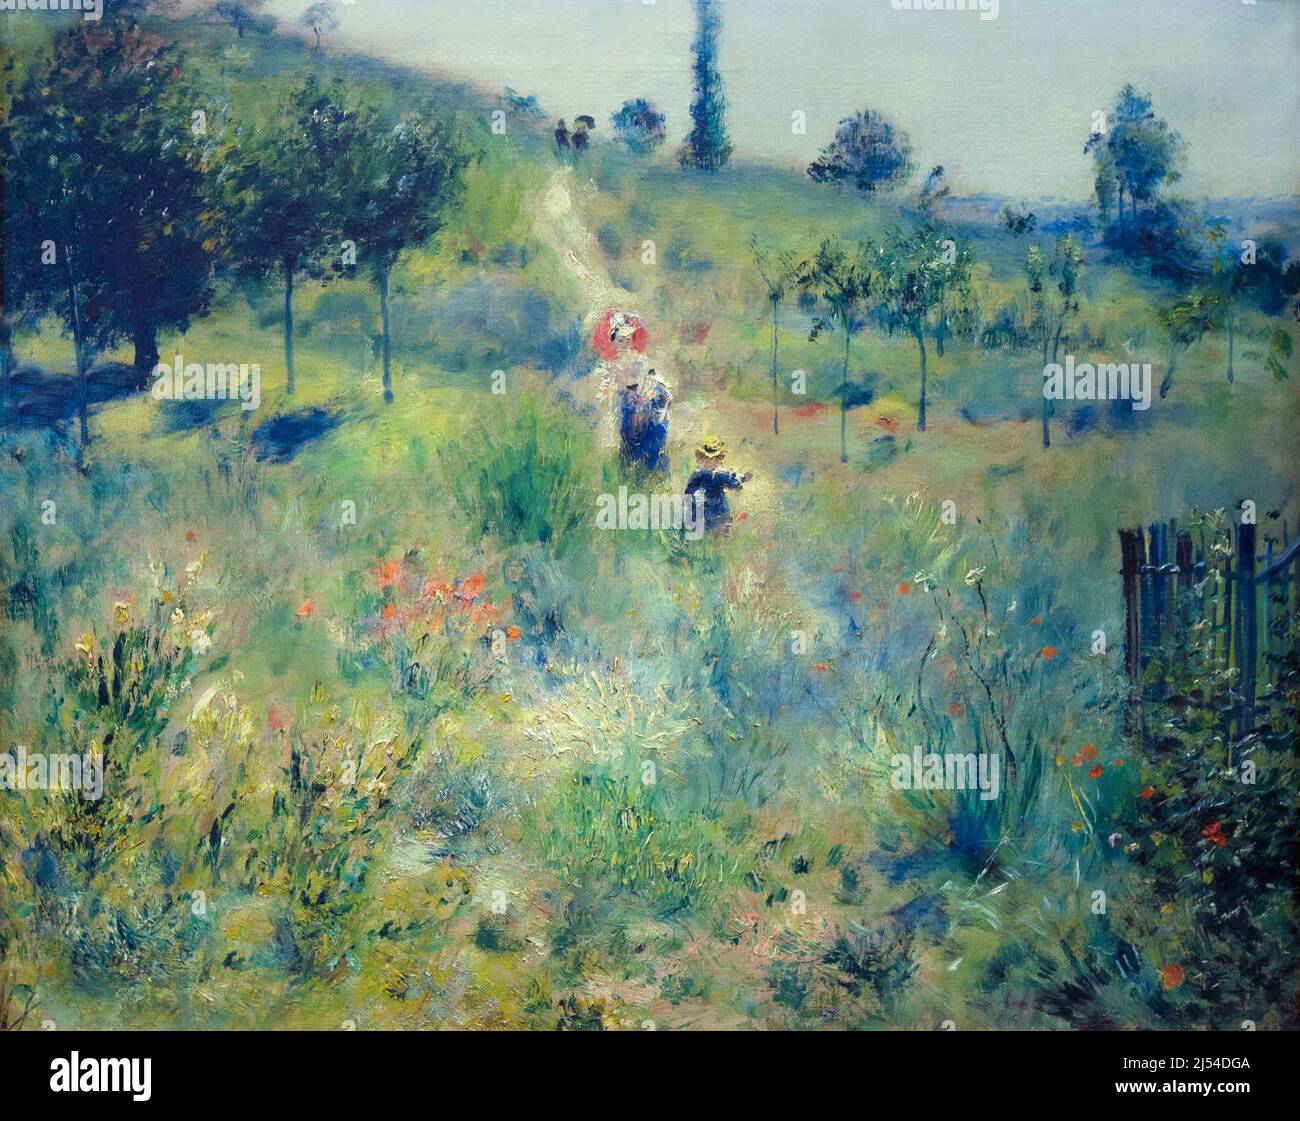 Chemin menant à l'herbe haute, chemin montant dans les hautes herbes, Pierre-Auguste Renoir, 1877, Musée d'Orsay, Paris, France, Europe Banque D'Images